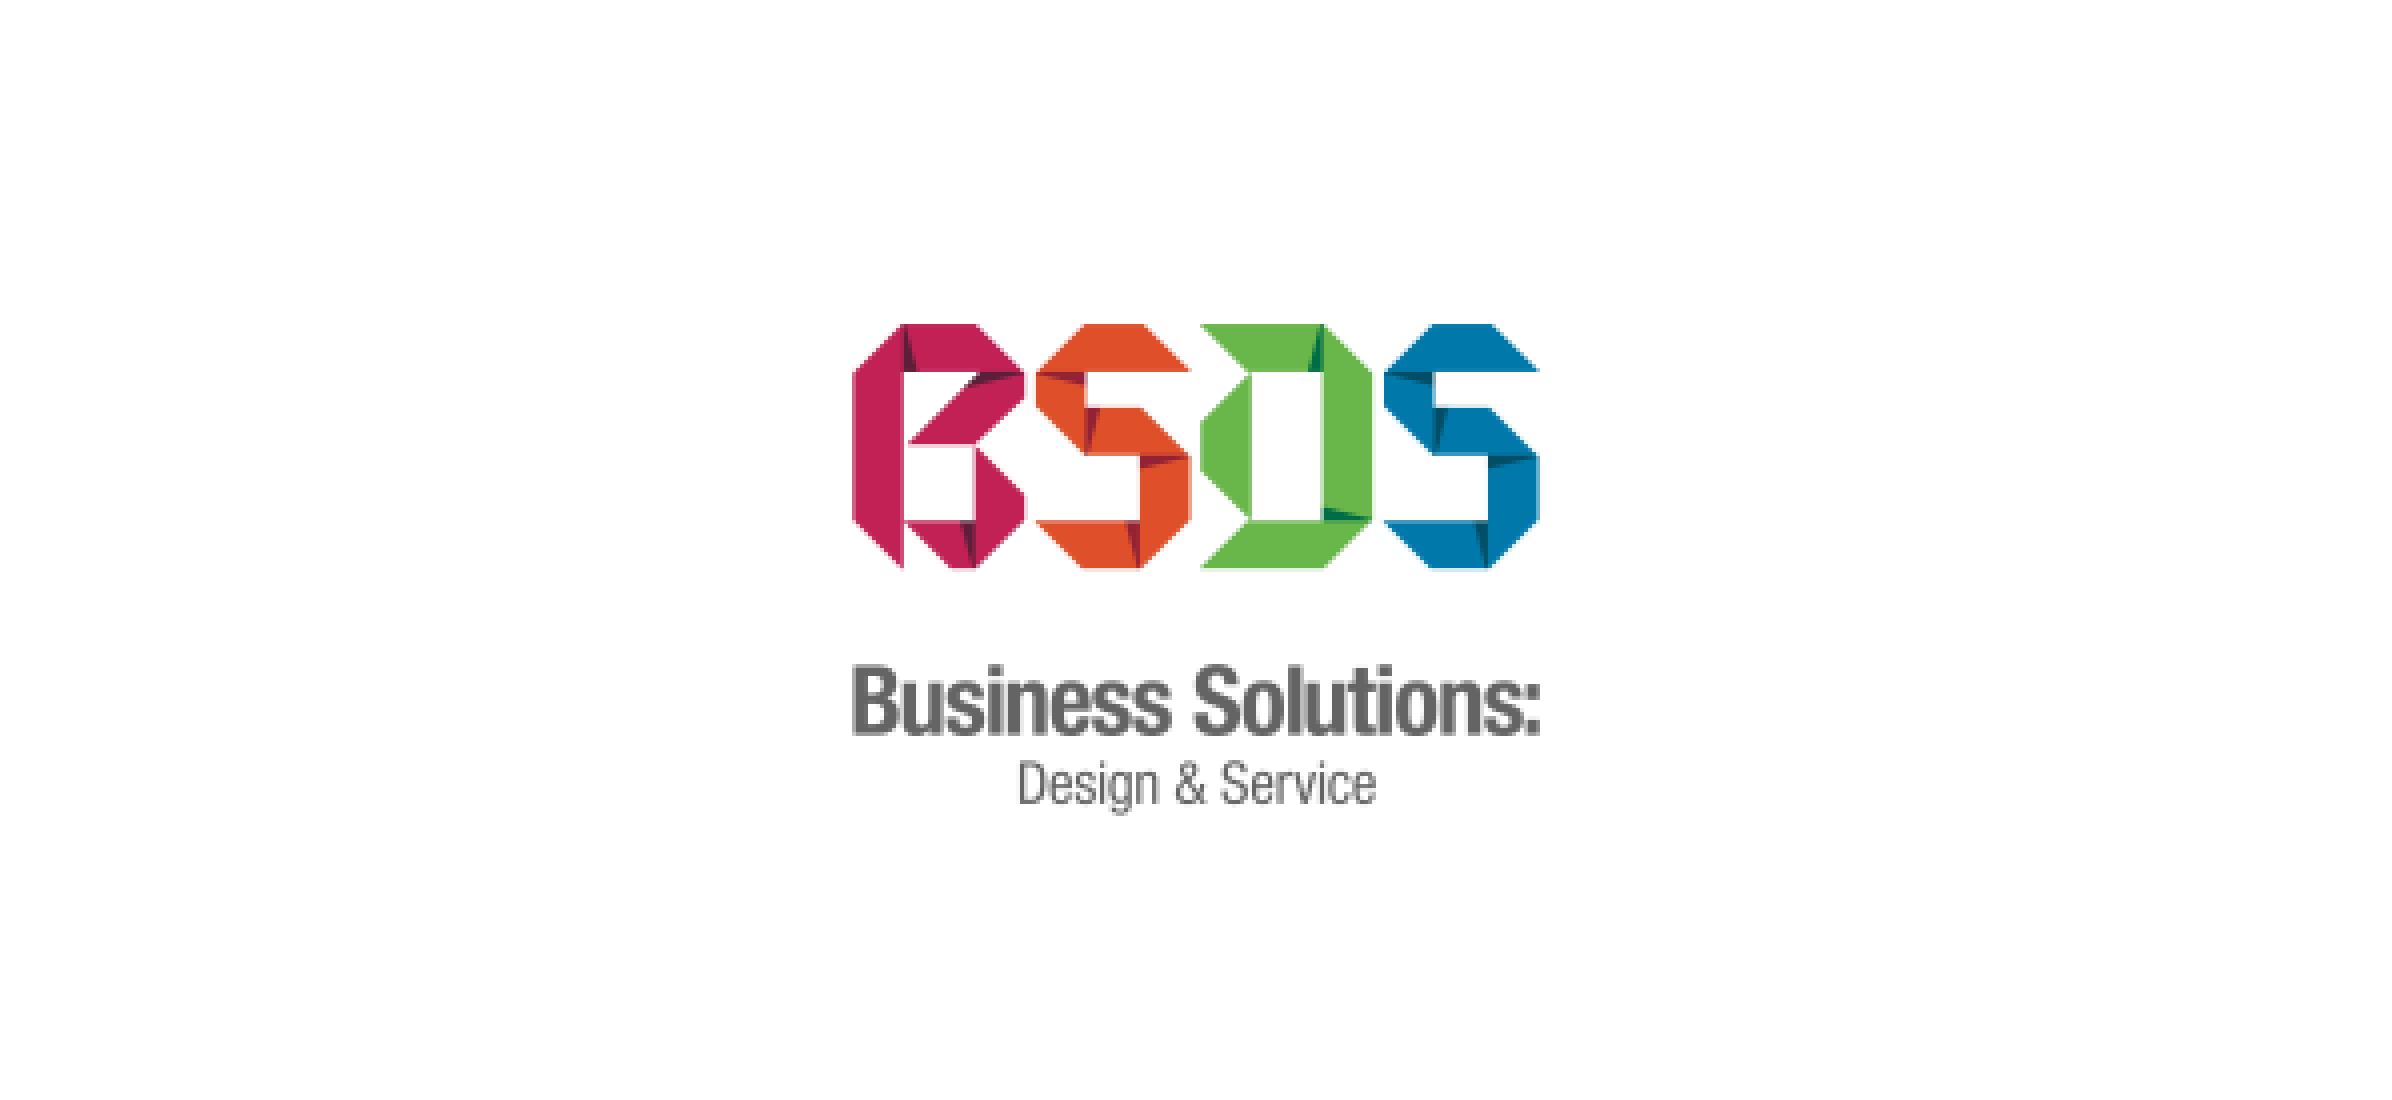 The BSDS logo